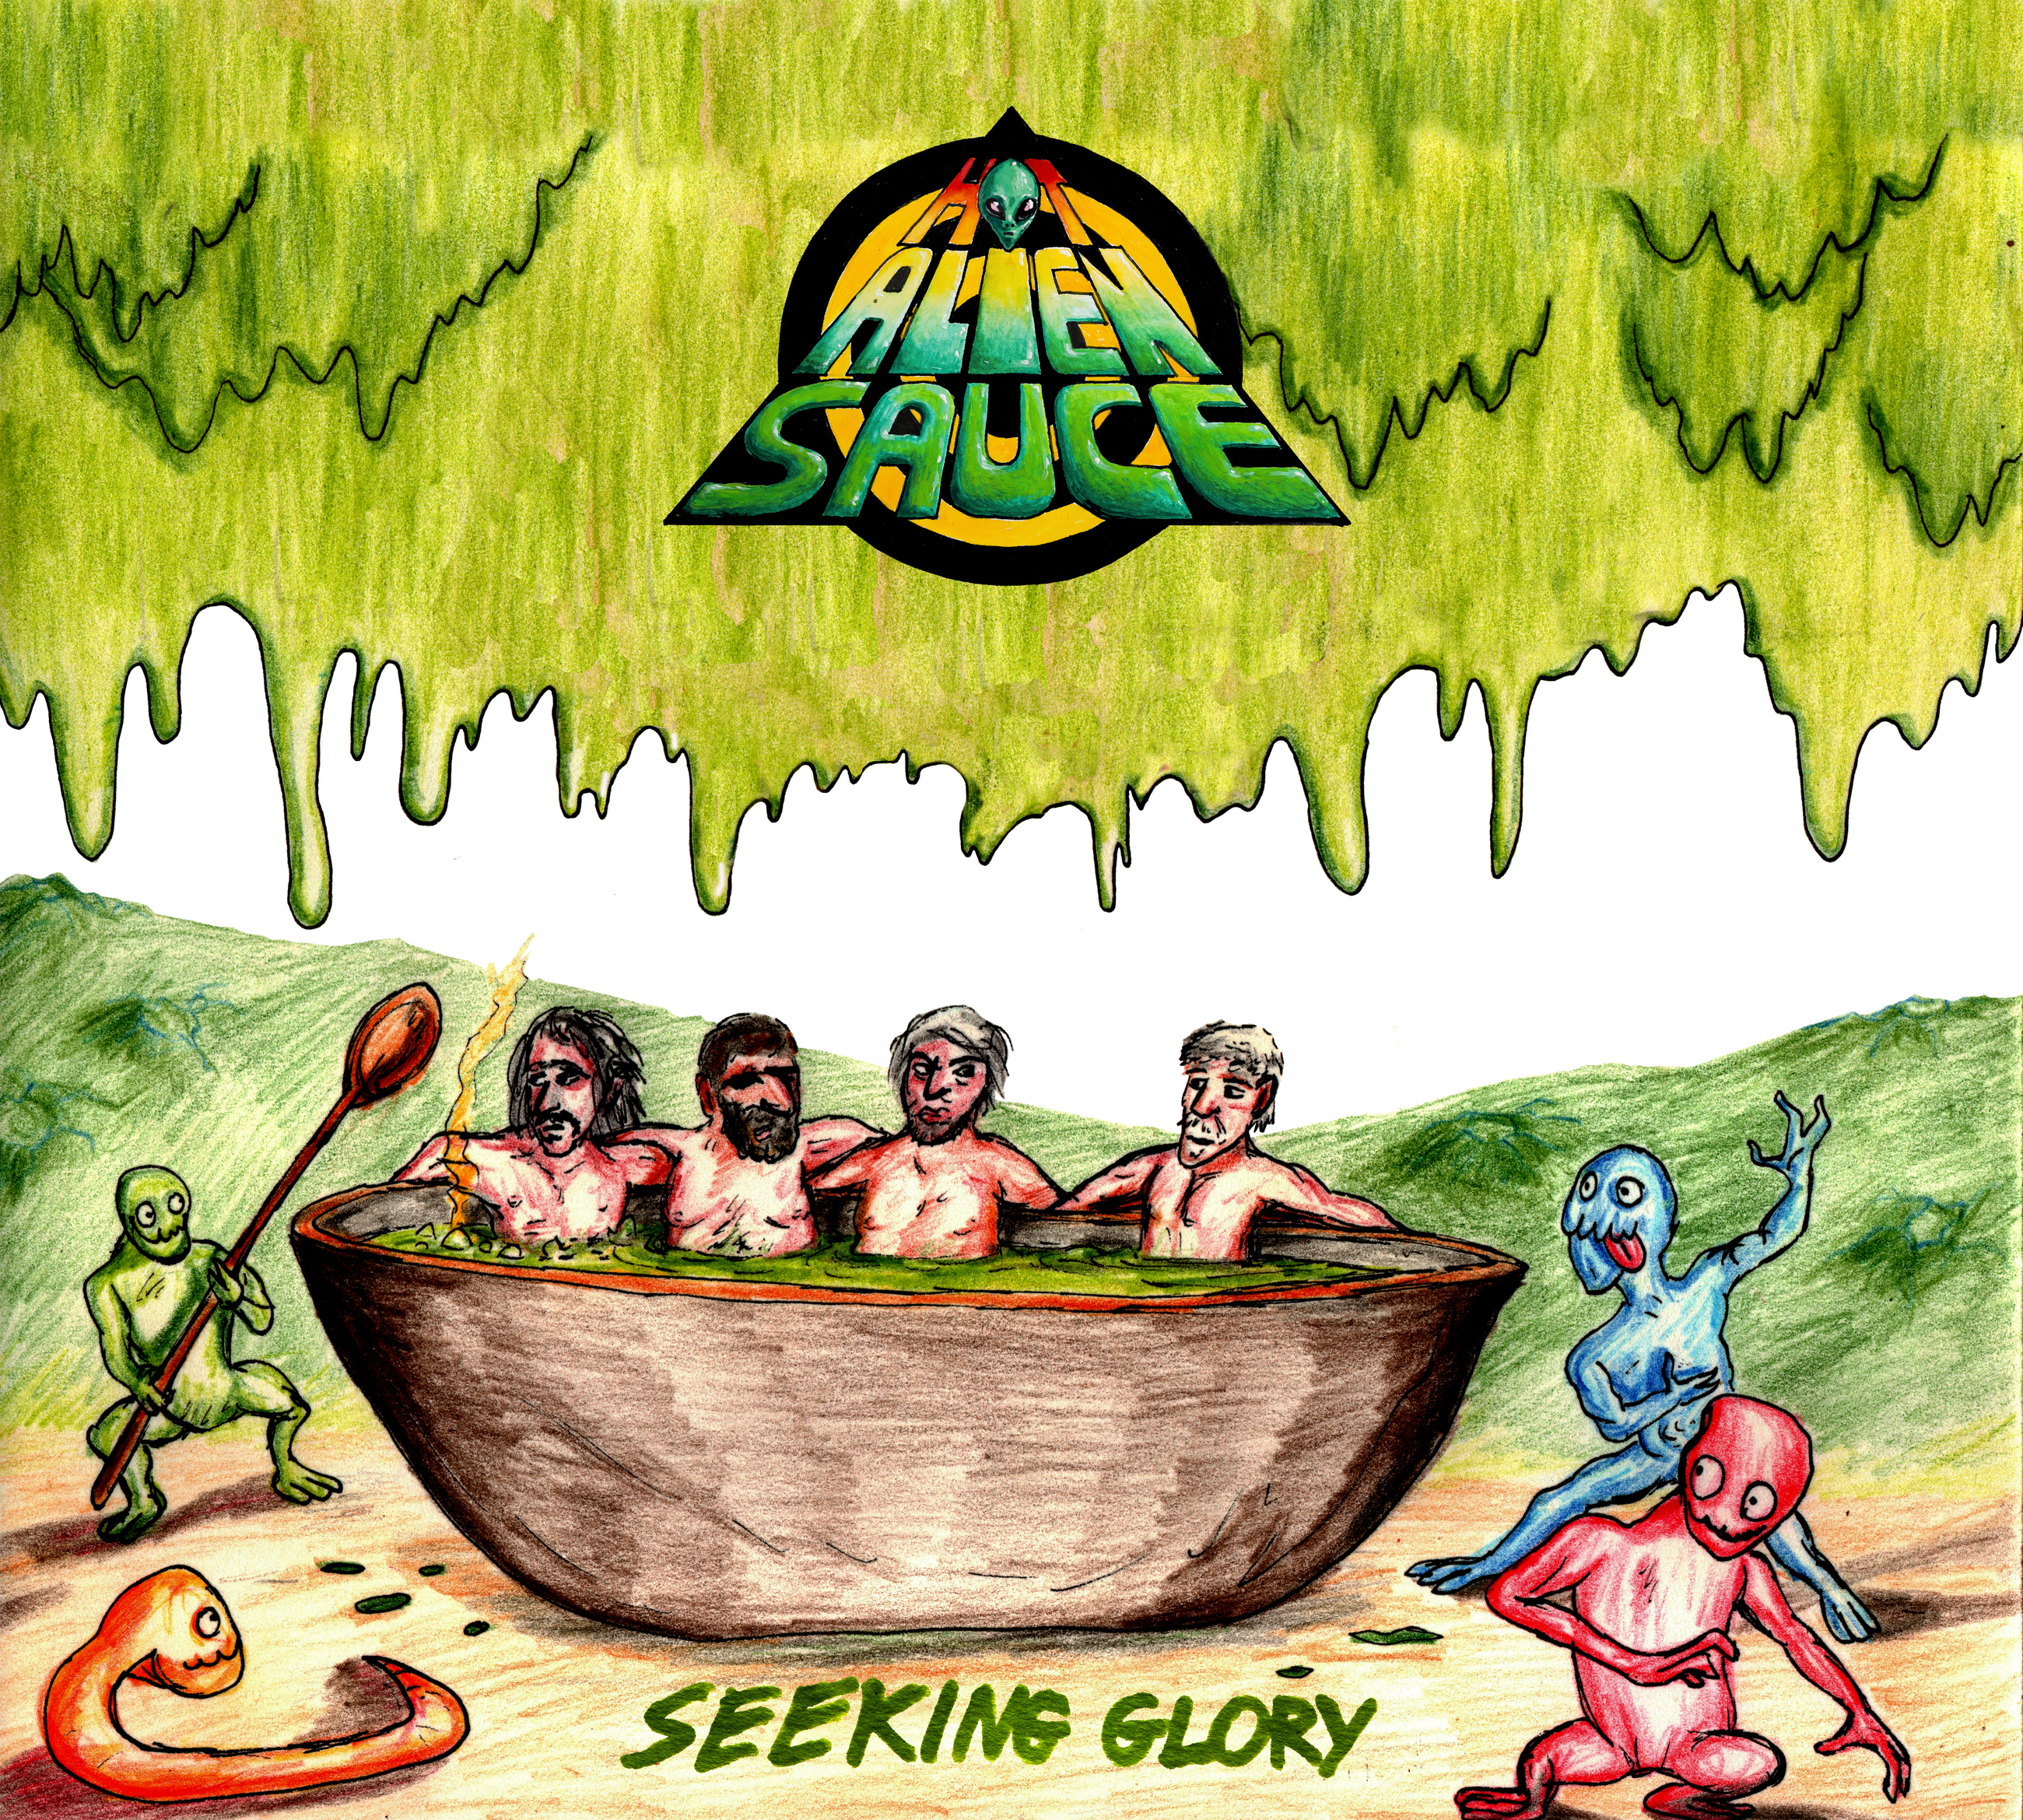 “Seeking Glory”, il nuovo Album degli Hot Alien Sauce è finalmente disponibile!